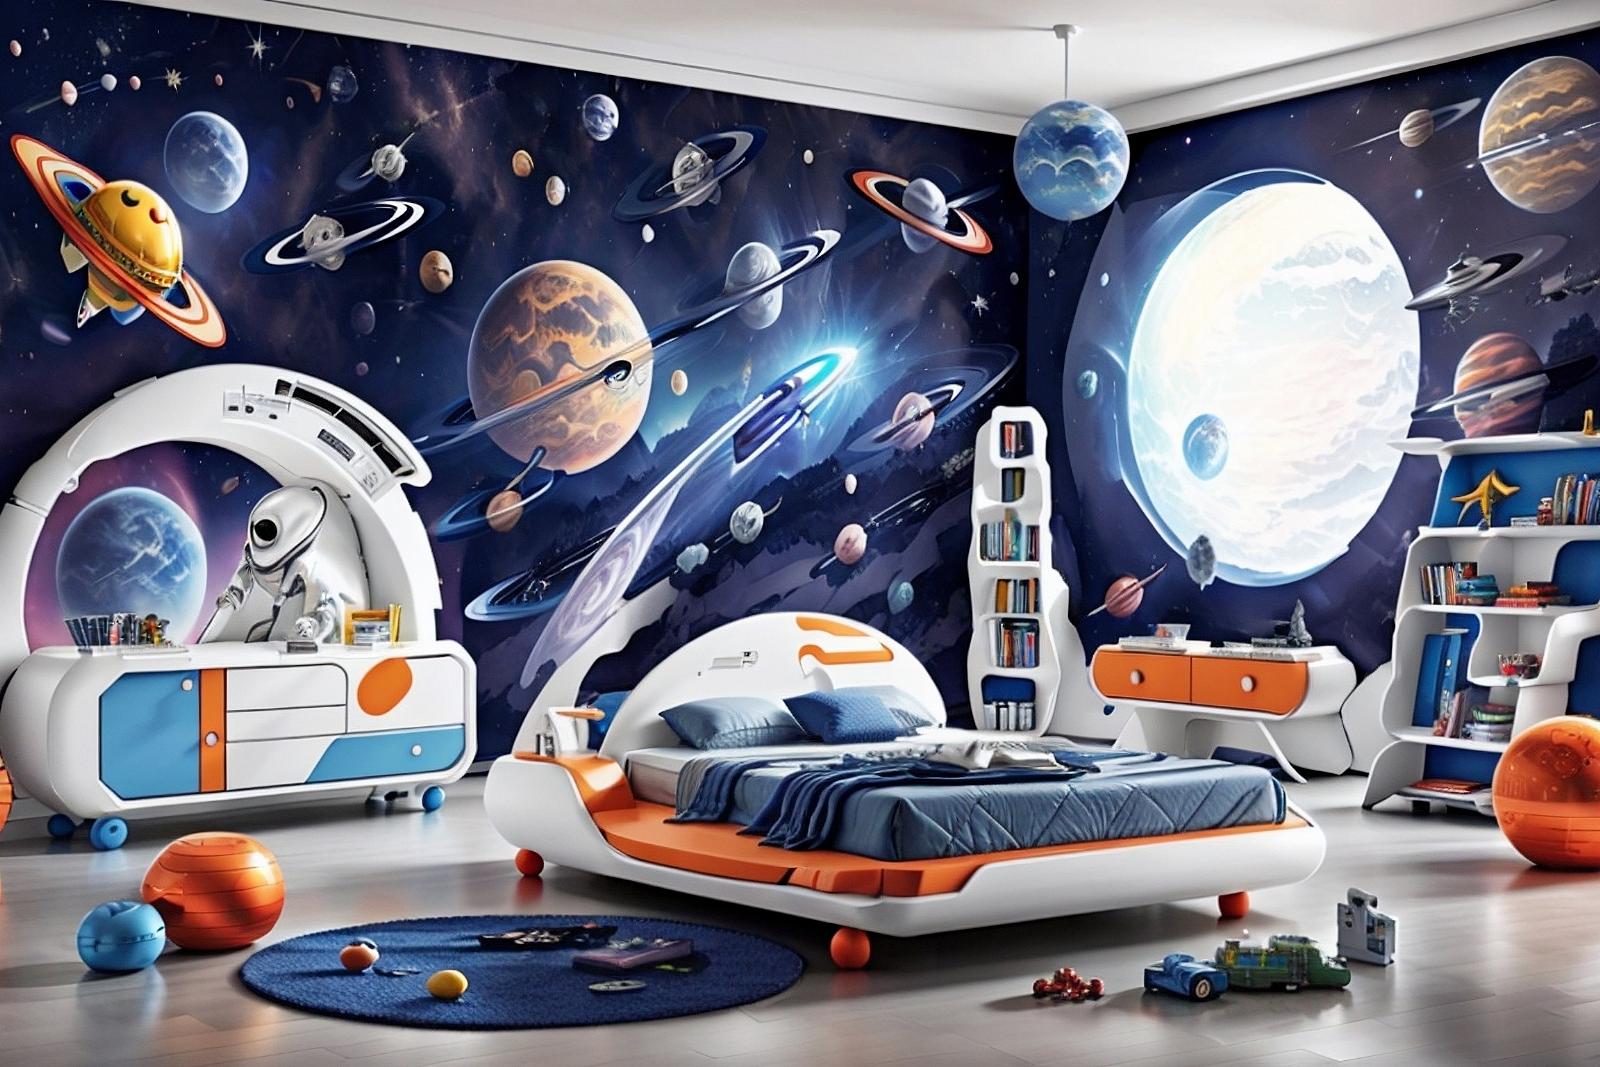 Space Kids Bedroom Furniture